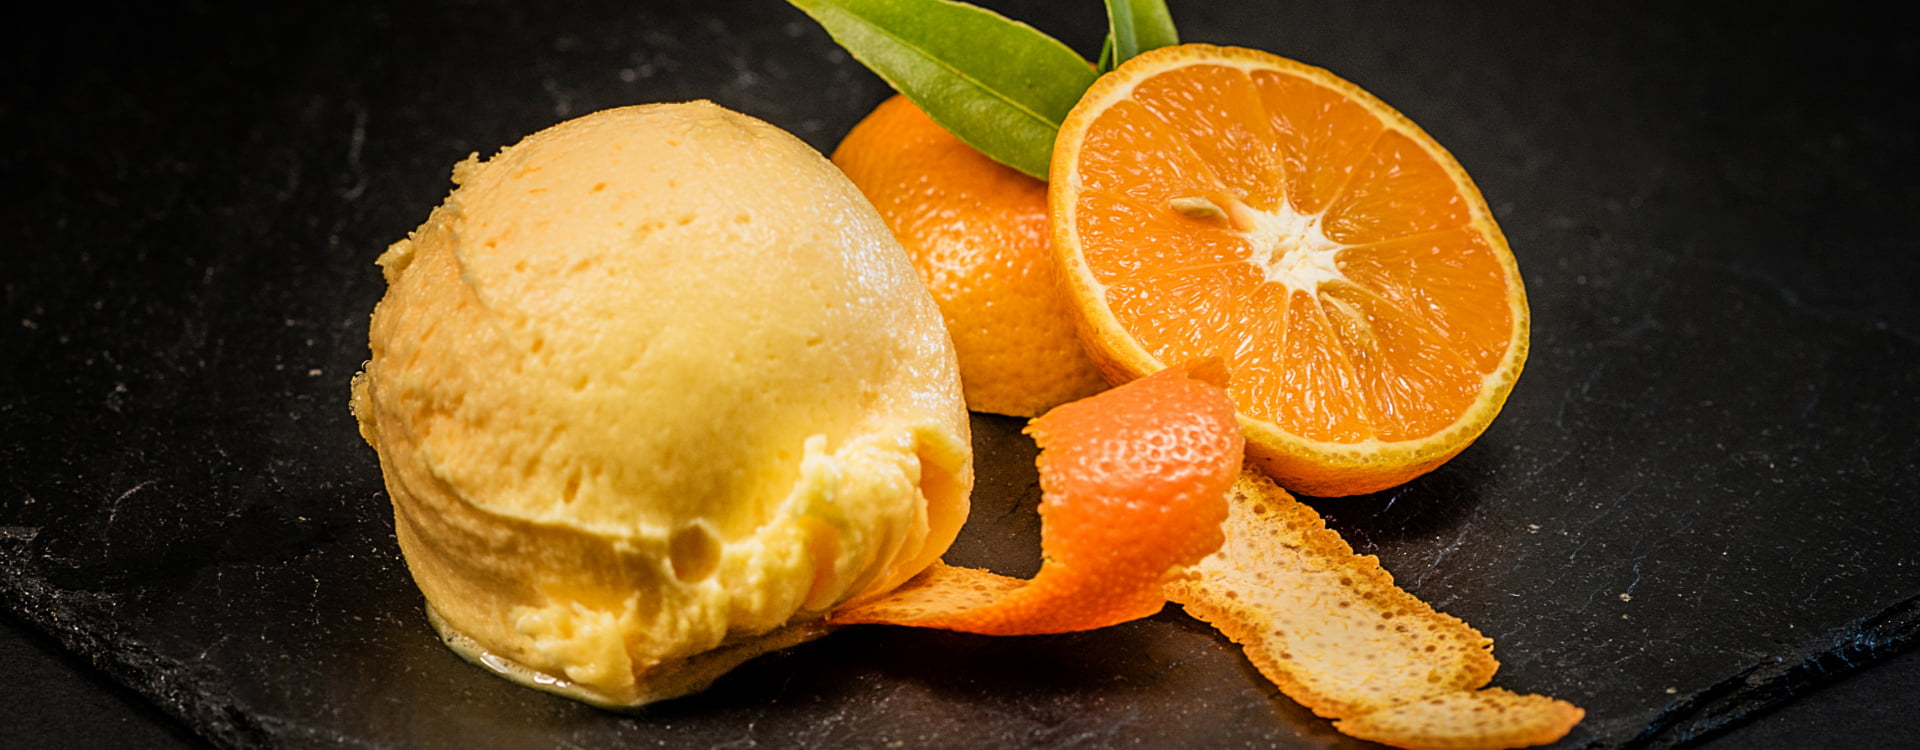 plato de postre con helado y rodajas de naranja